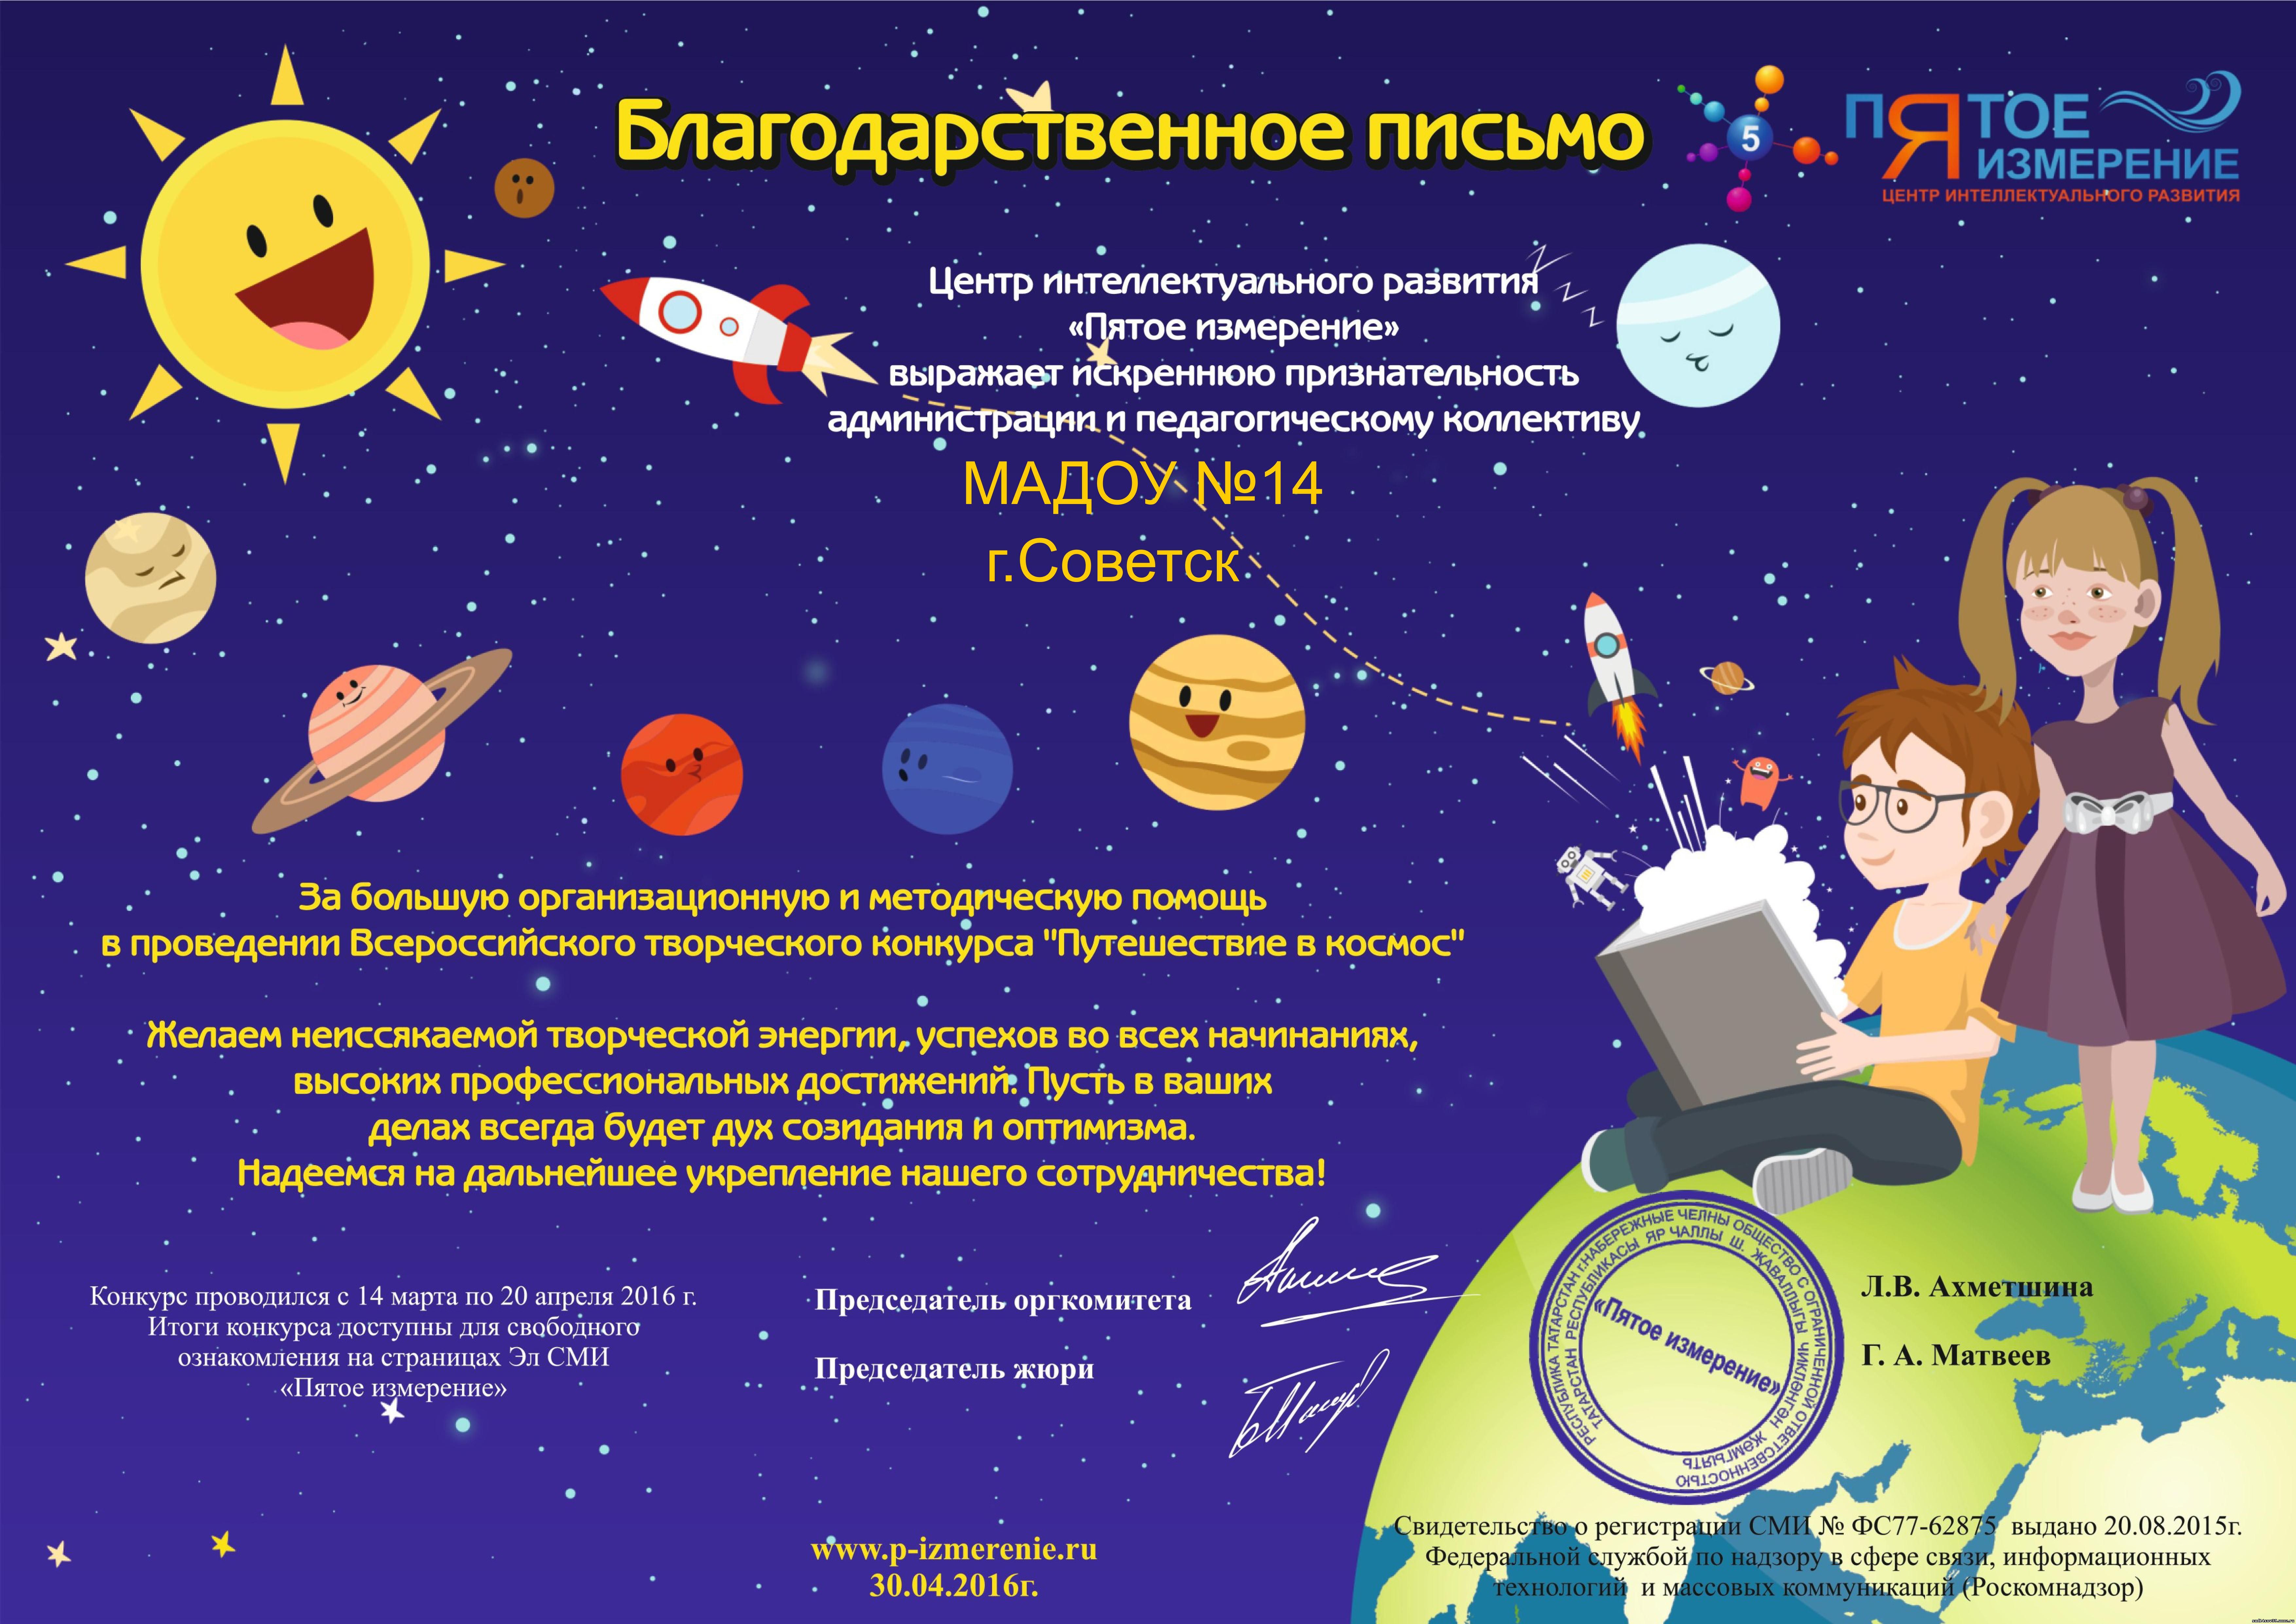 Конкурсы для детей ко дню космонавтики